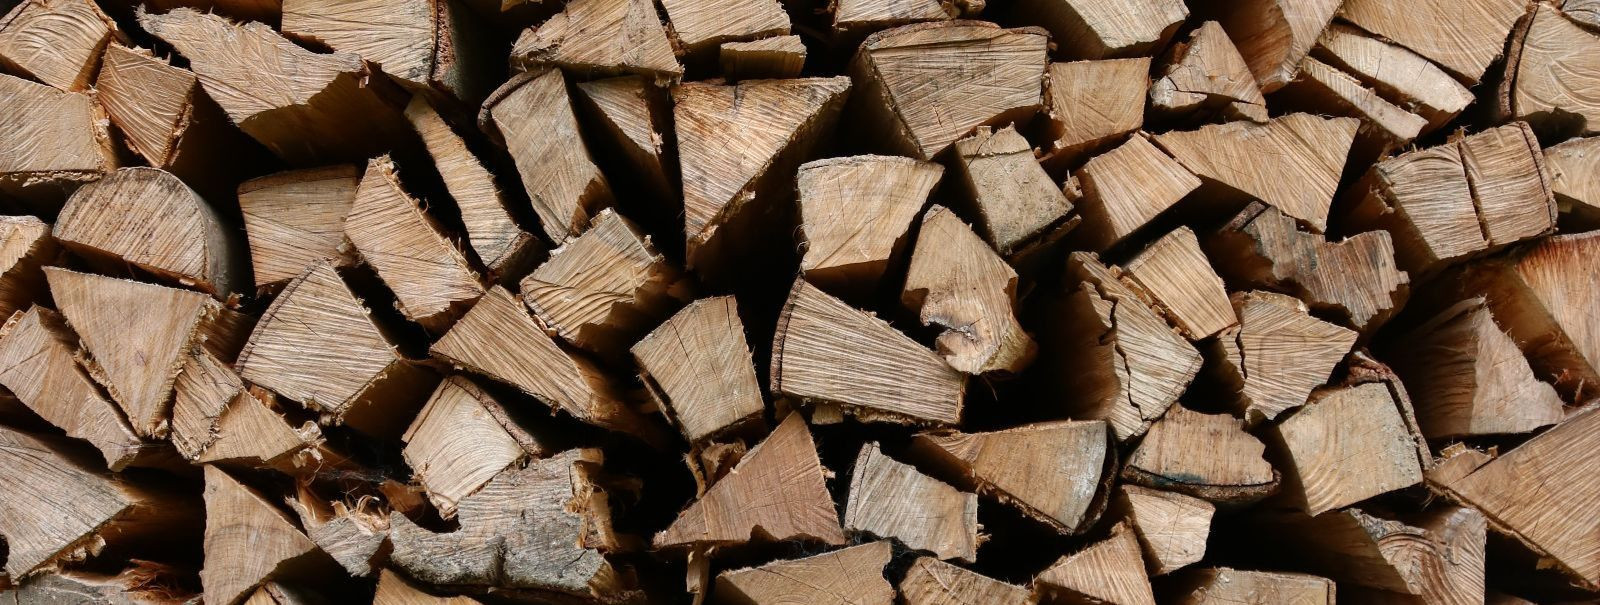 Kuivamisaeg sõltub paljudest teguritest, näiteks puuliigist, küttepuu niiskusesisaldusest, ilmastikuoludest, ladustamisviisist jne. Kui puud on lõhutud ja laota